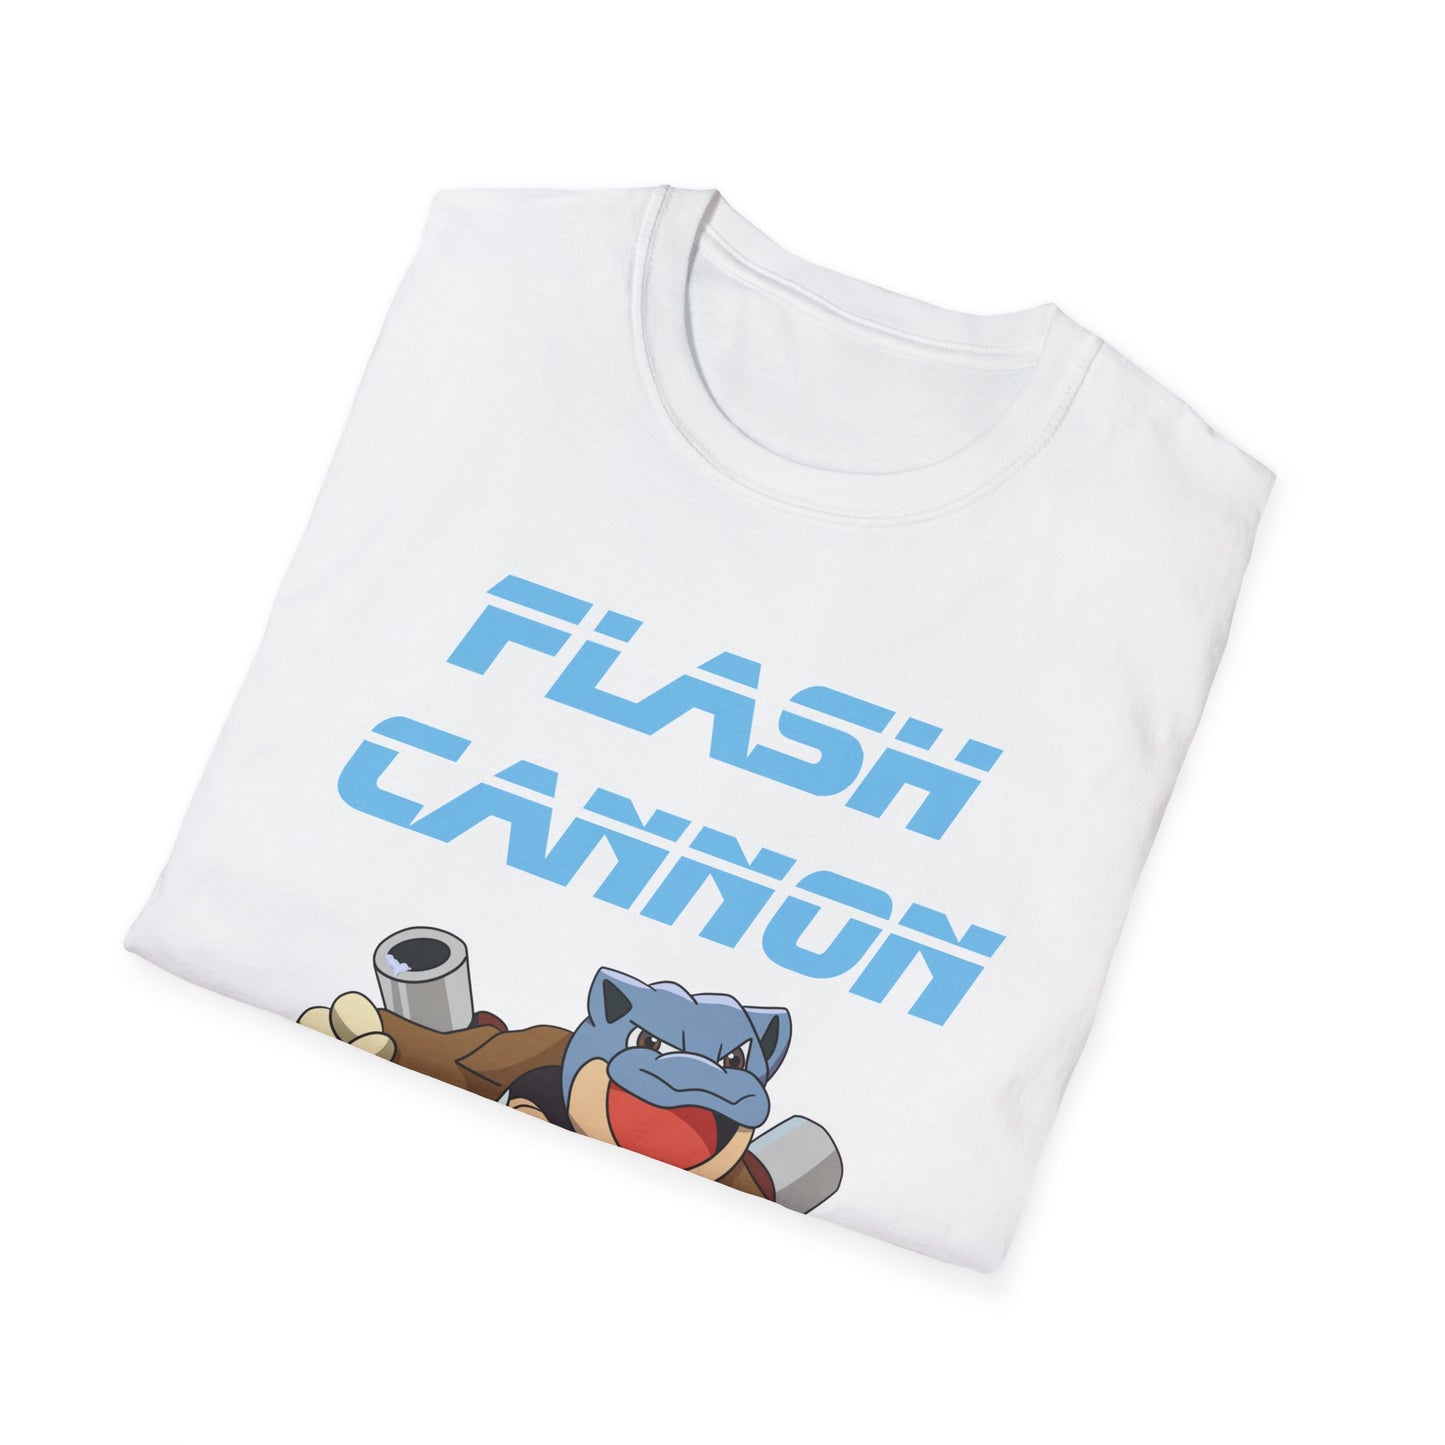 Flash Cannon - USA